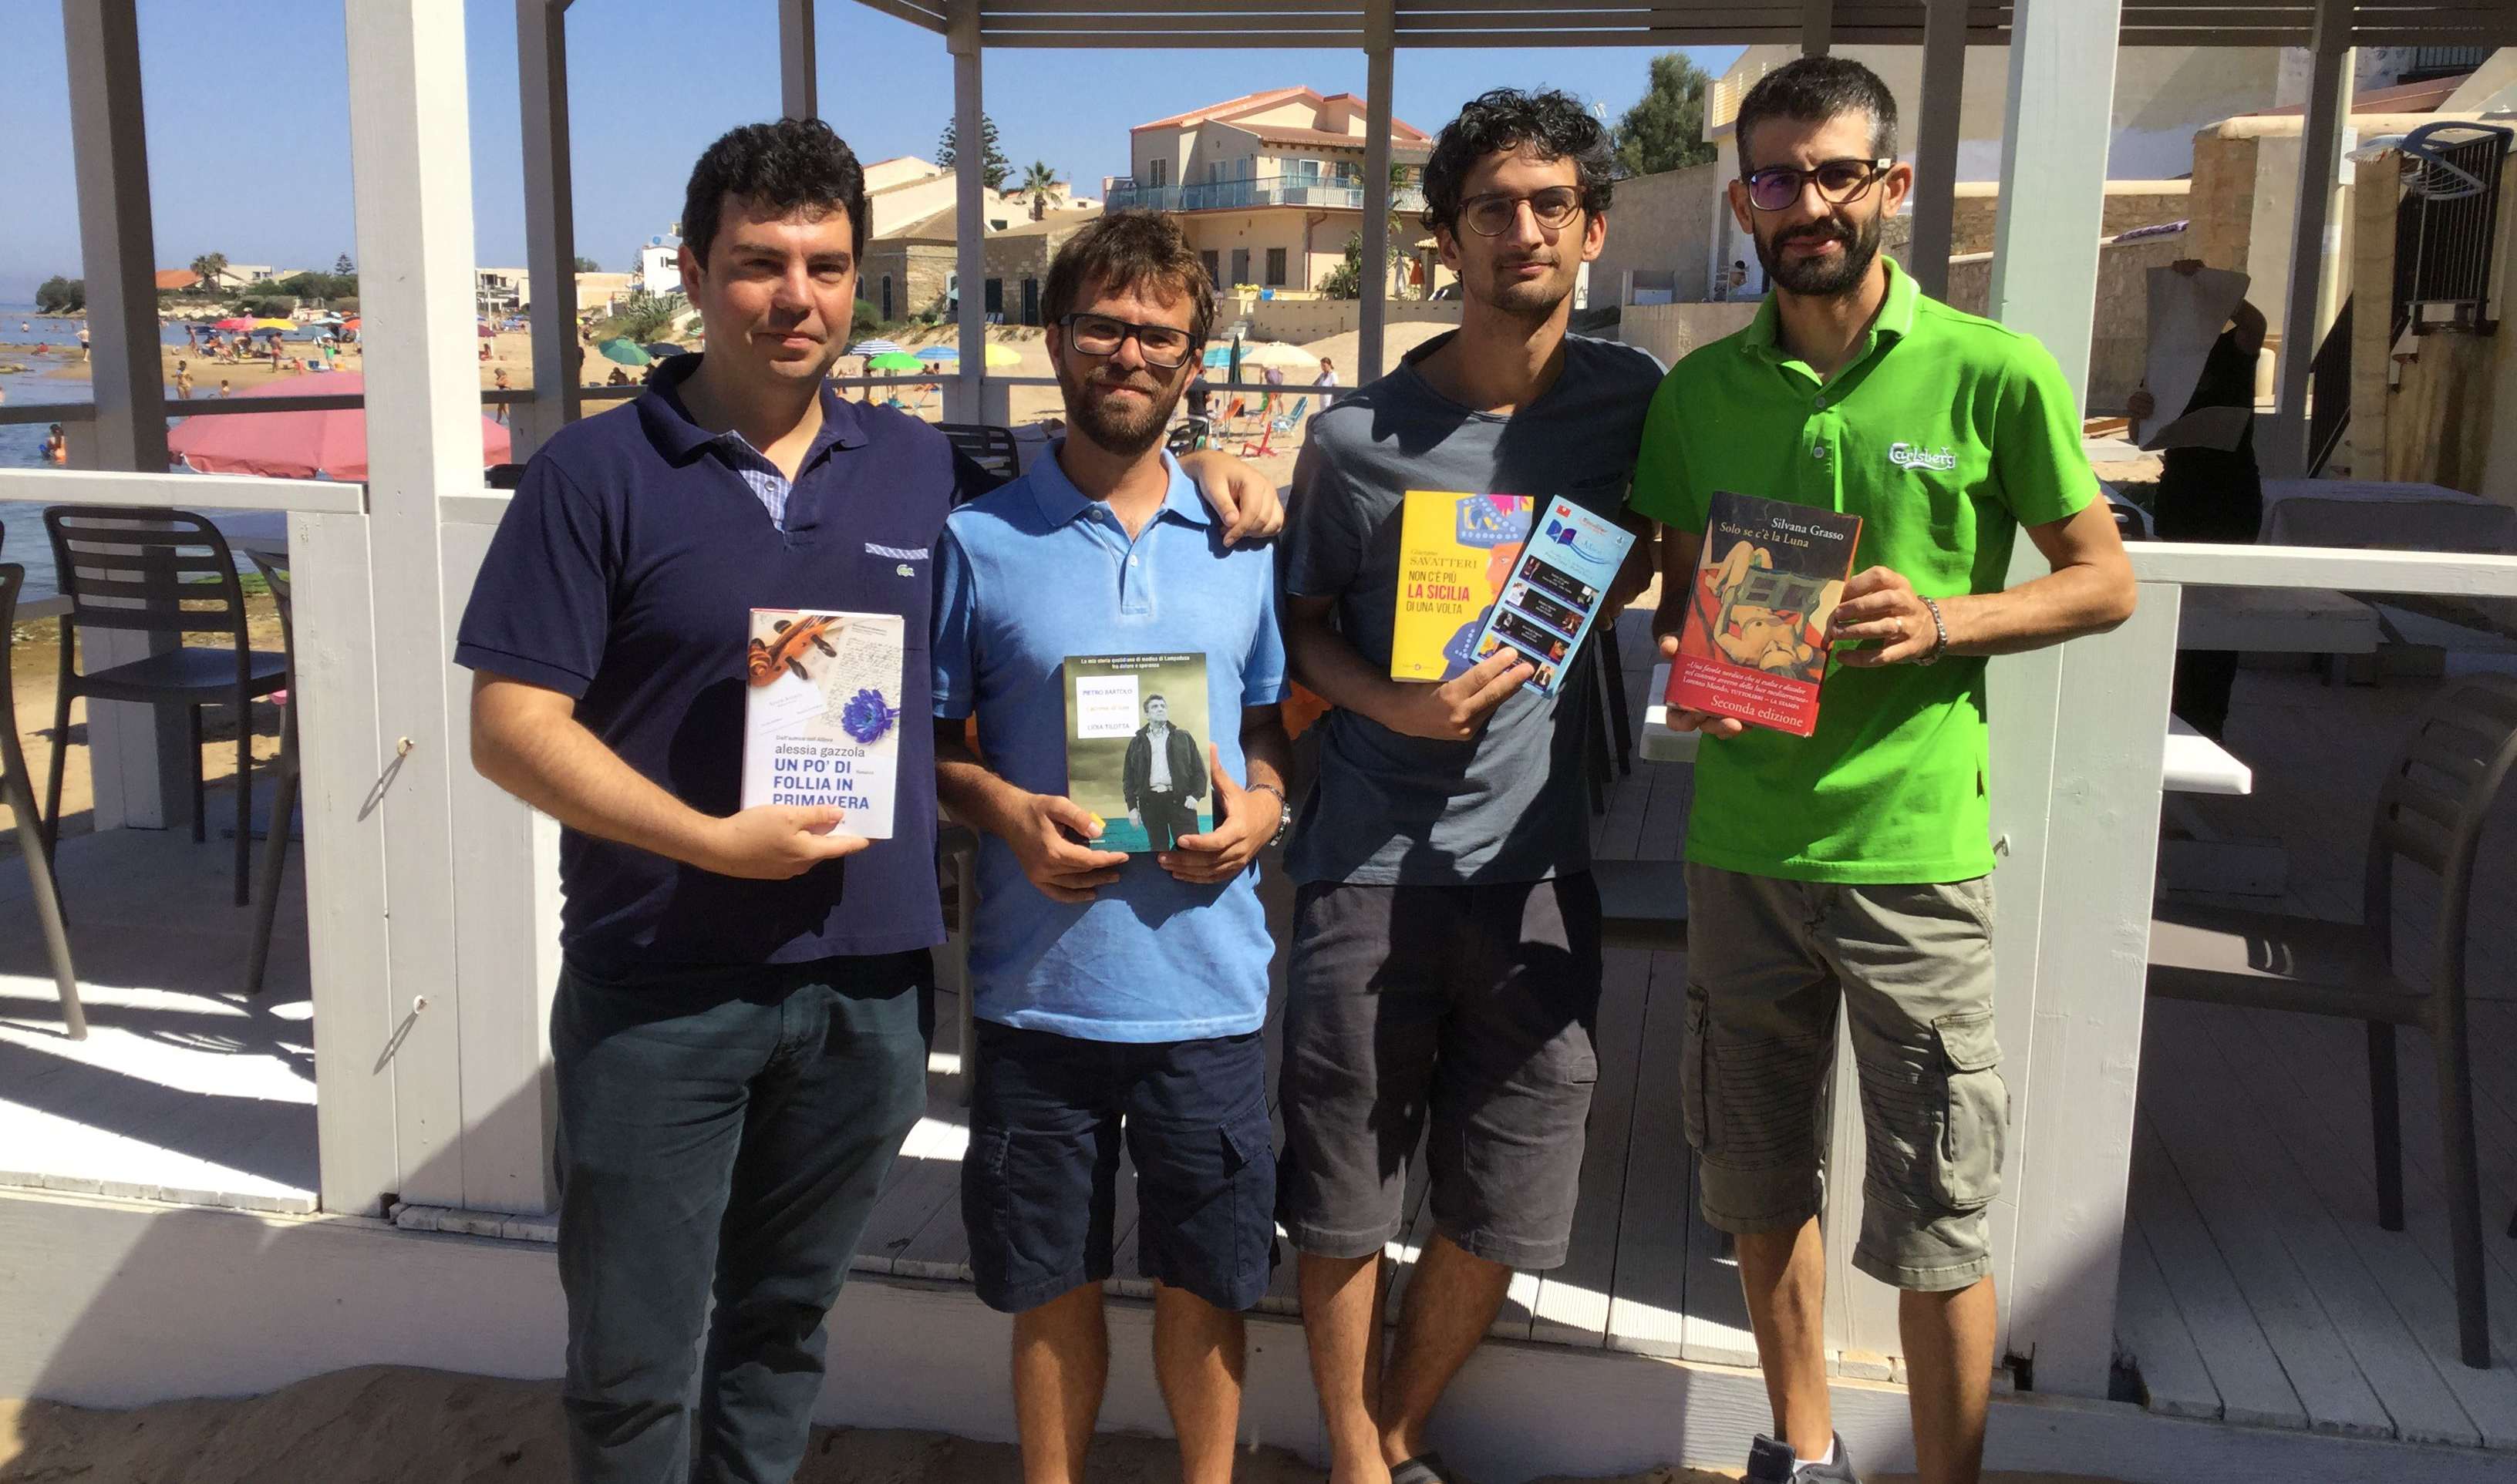  Libri d’aMare, la terza edizione parla siciliano: via il 29 luglio in piazza Torre